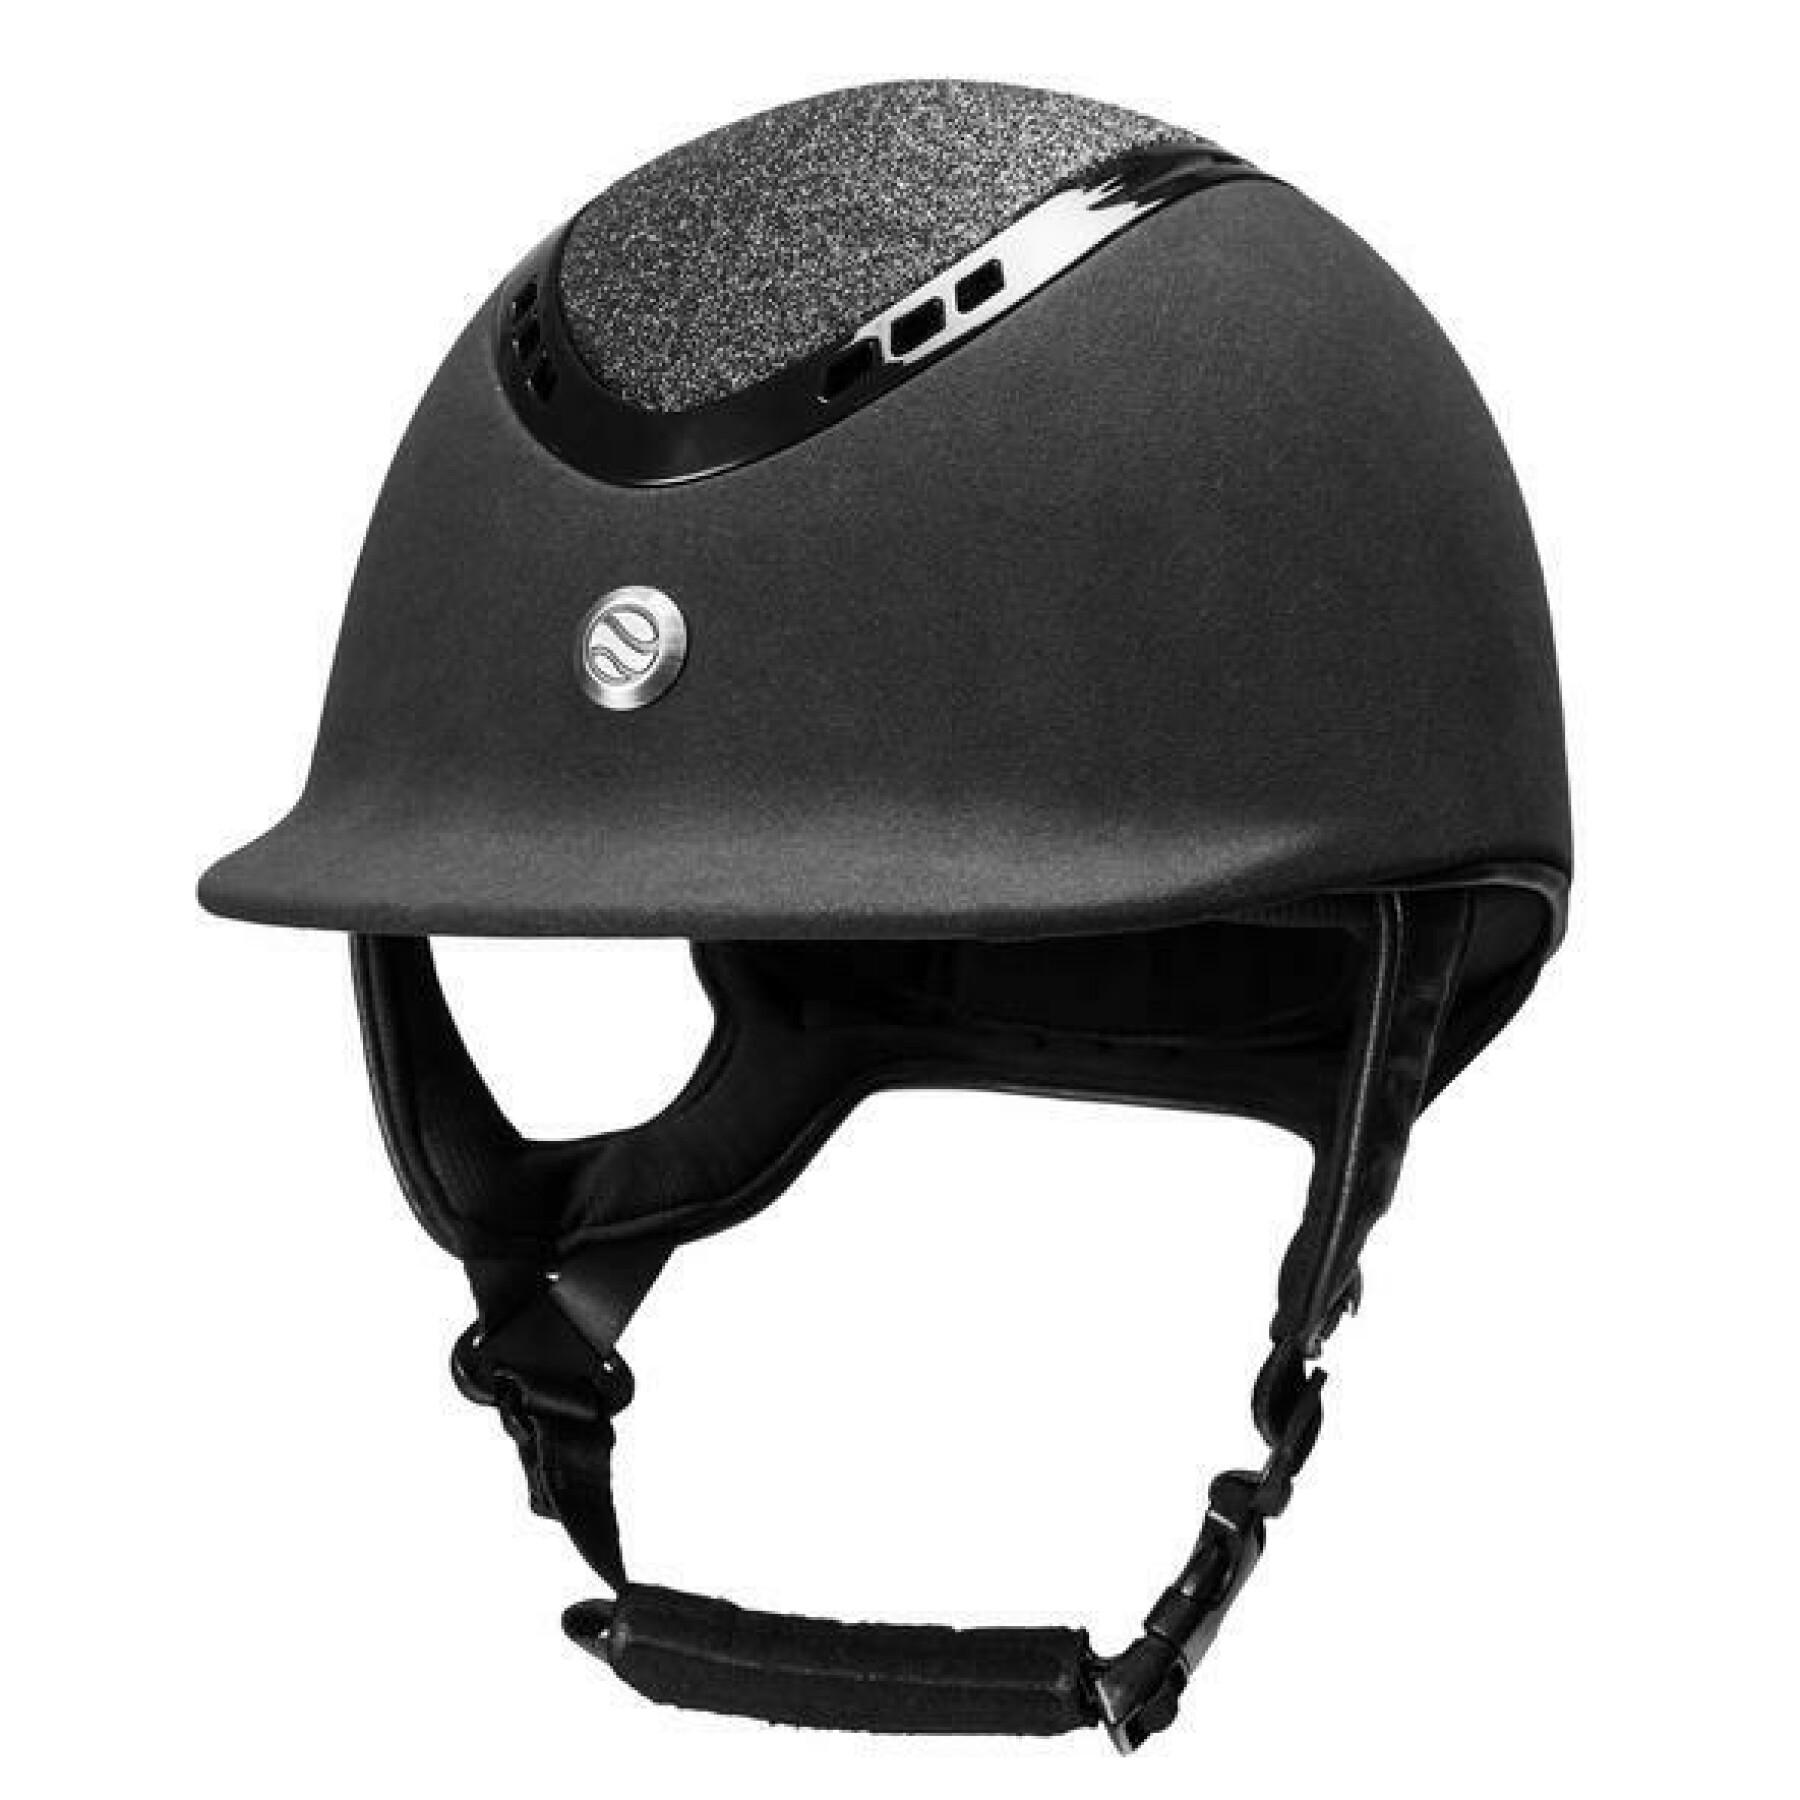 Microfiber helmet Back on Track EQ3 pardus